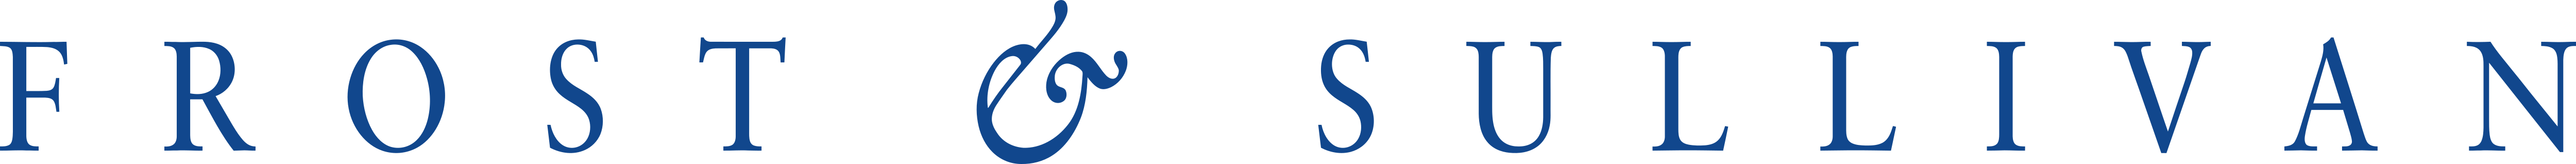 Frost Sullivan Logo